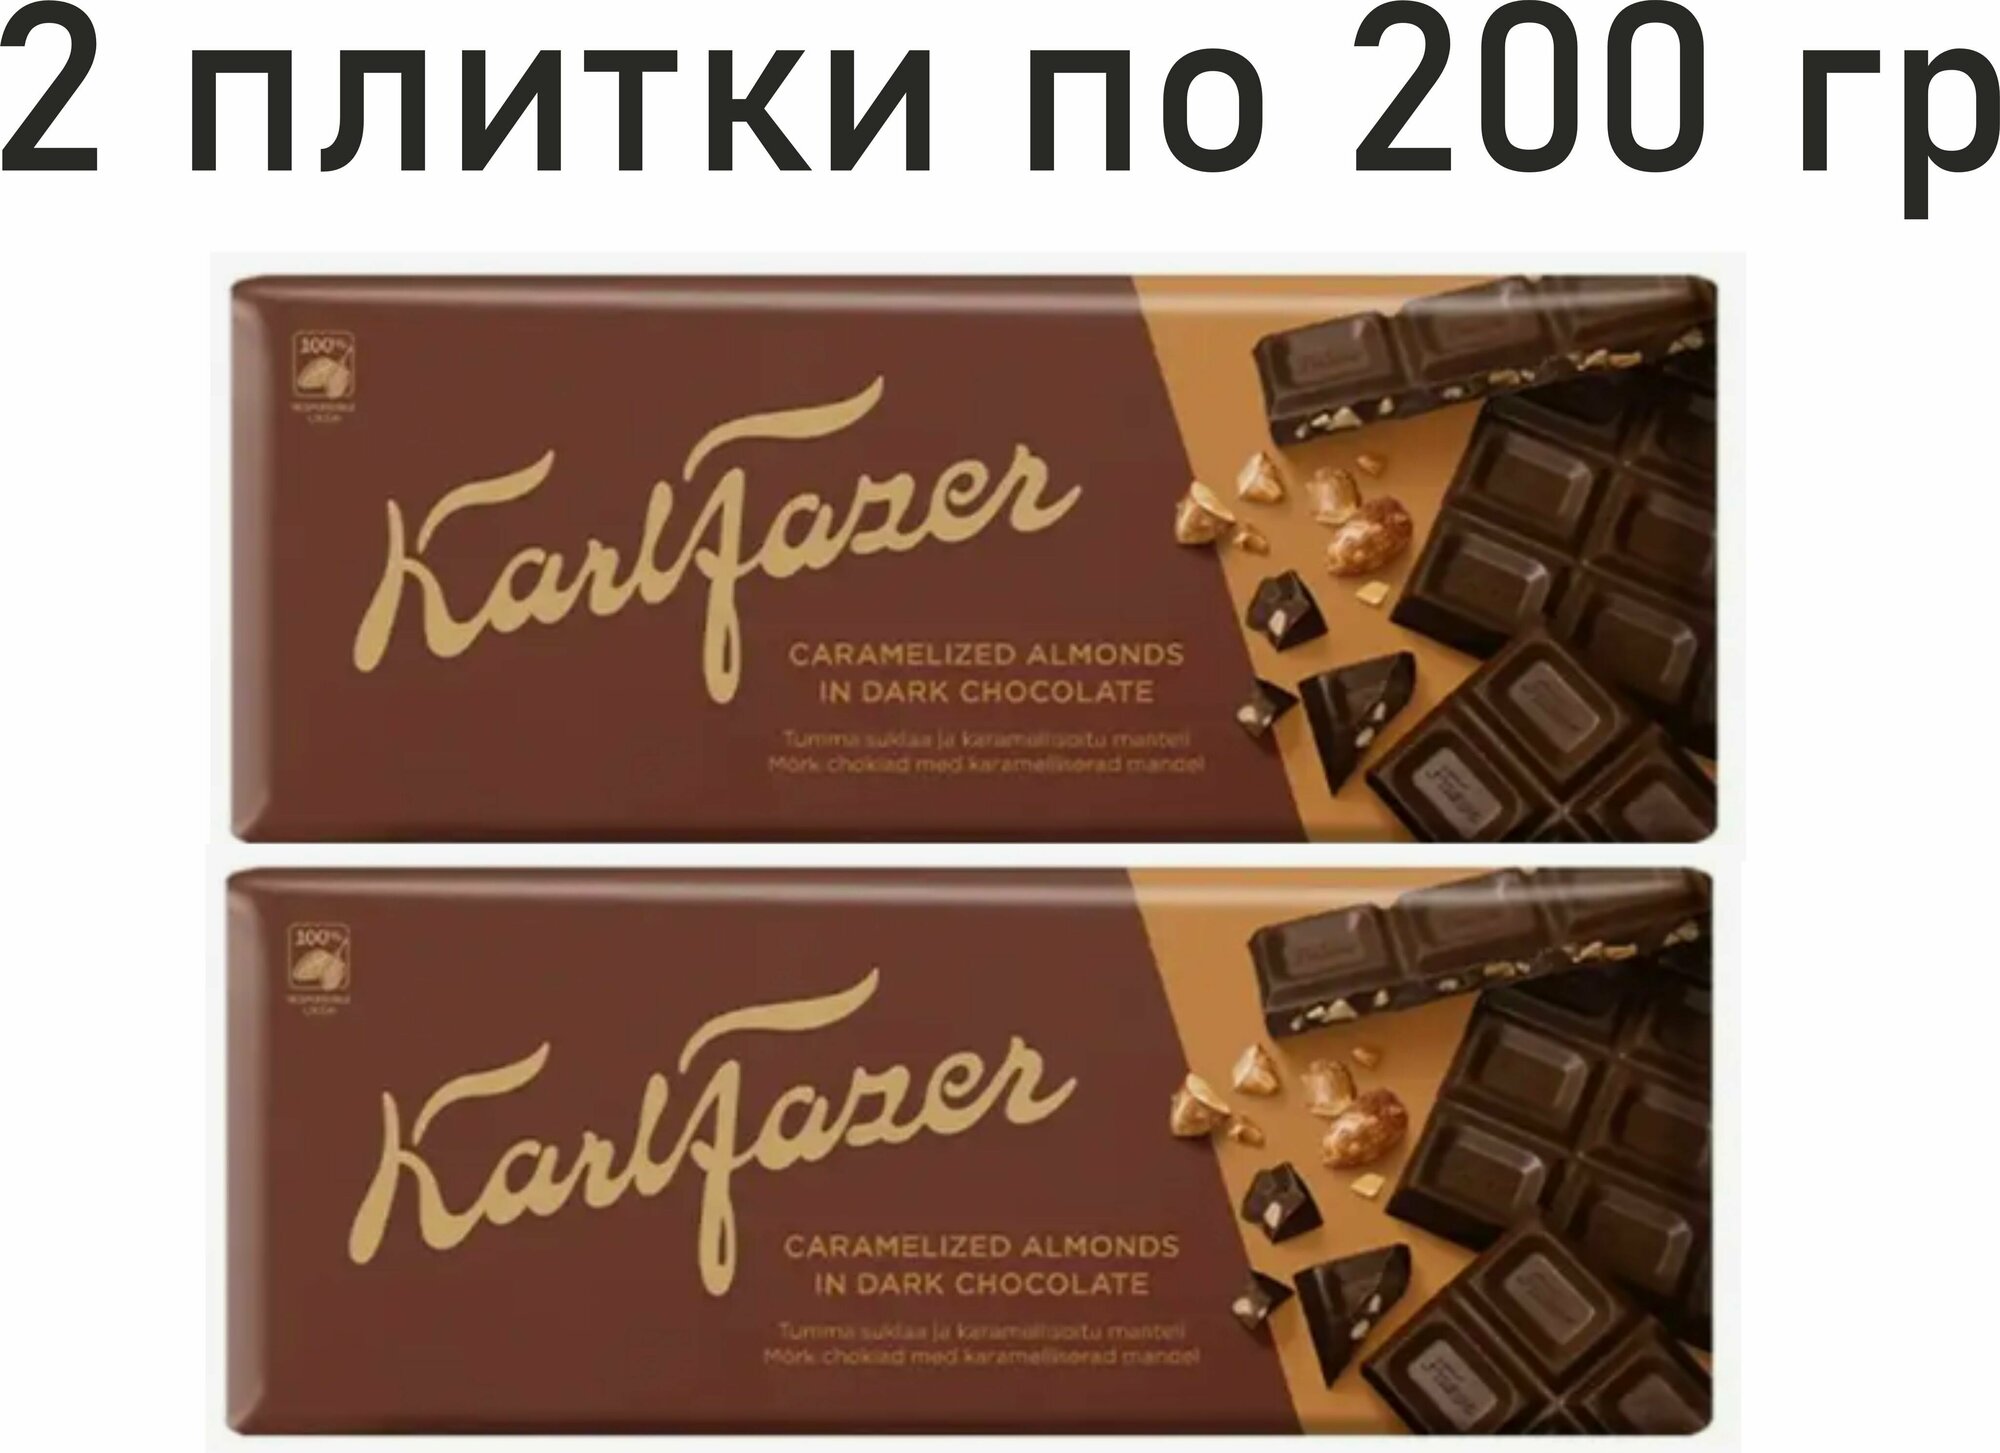 2 шт. Шоколад темный с карамелизированным миндалем, Karl Fazer, 200 гр (400 гр) Финляндия